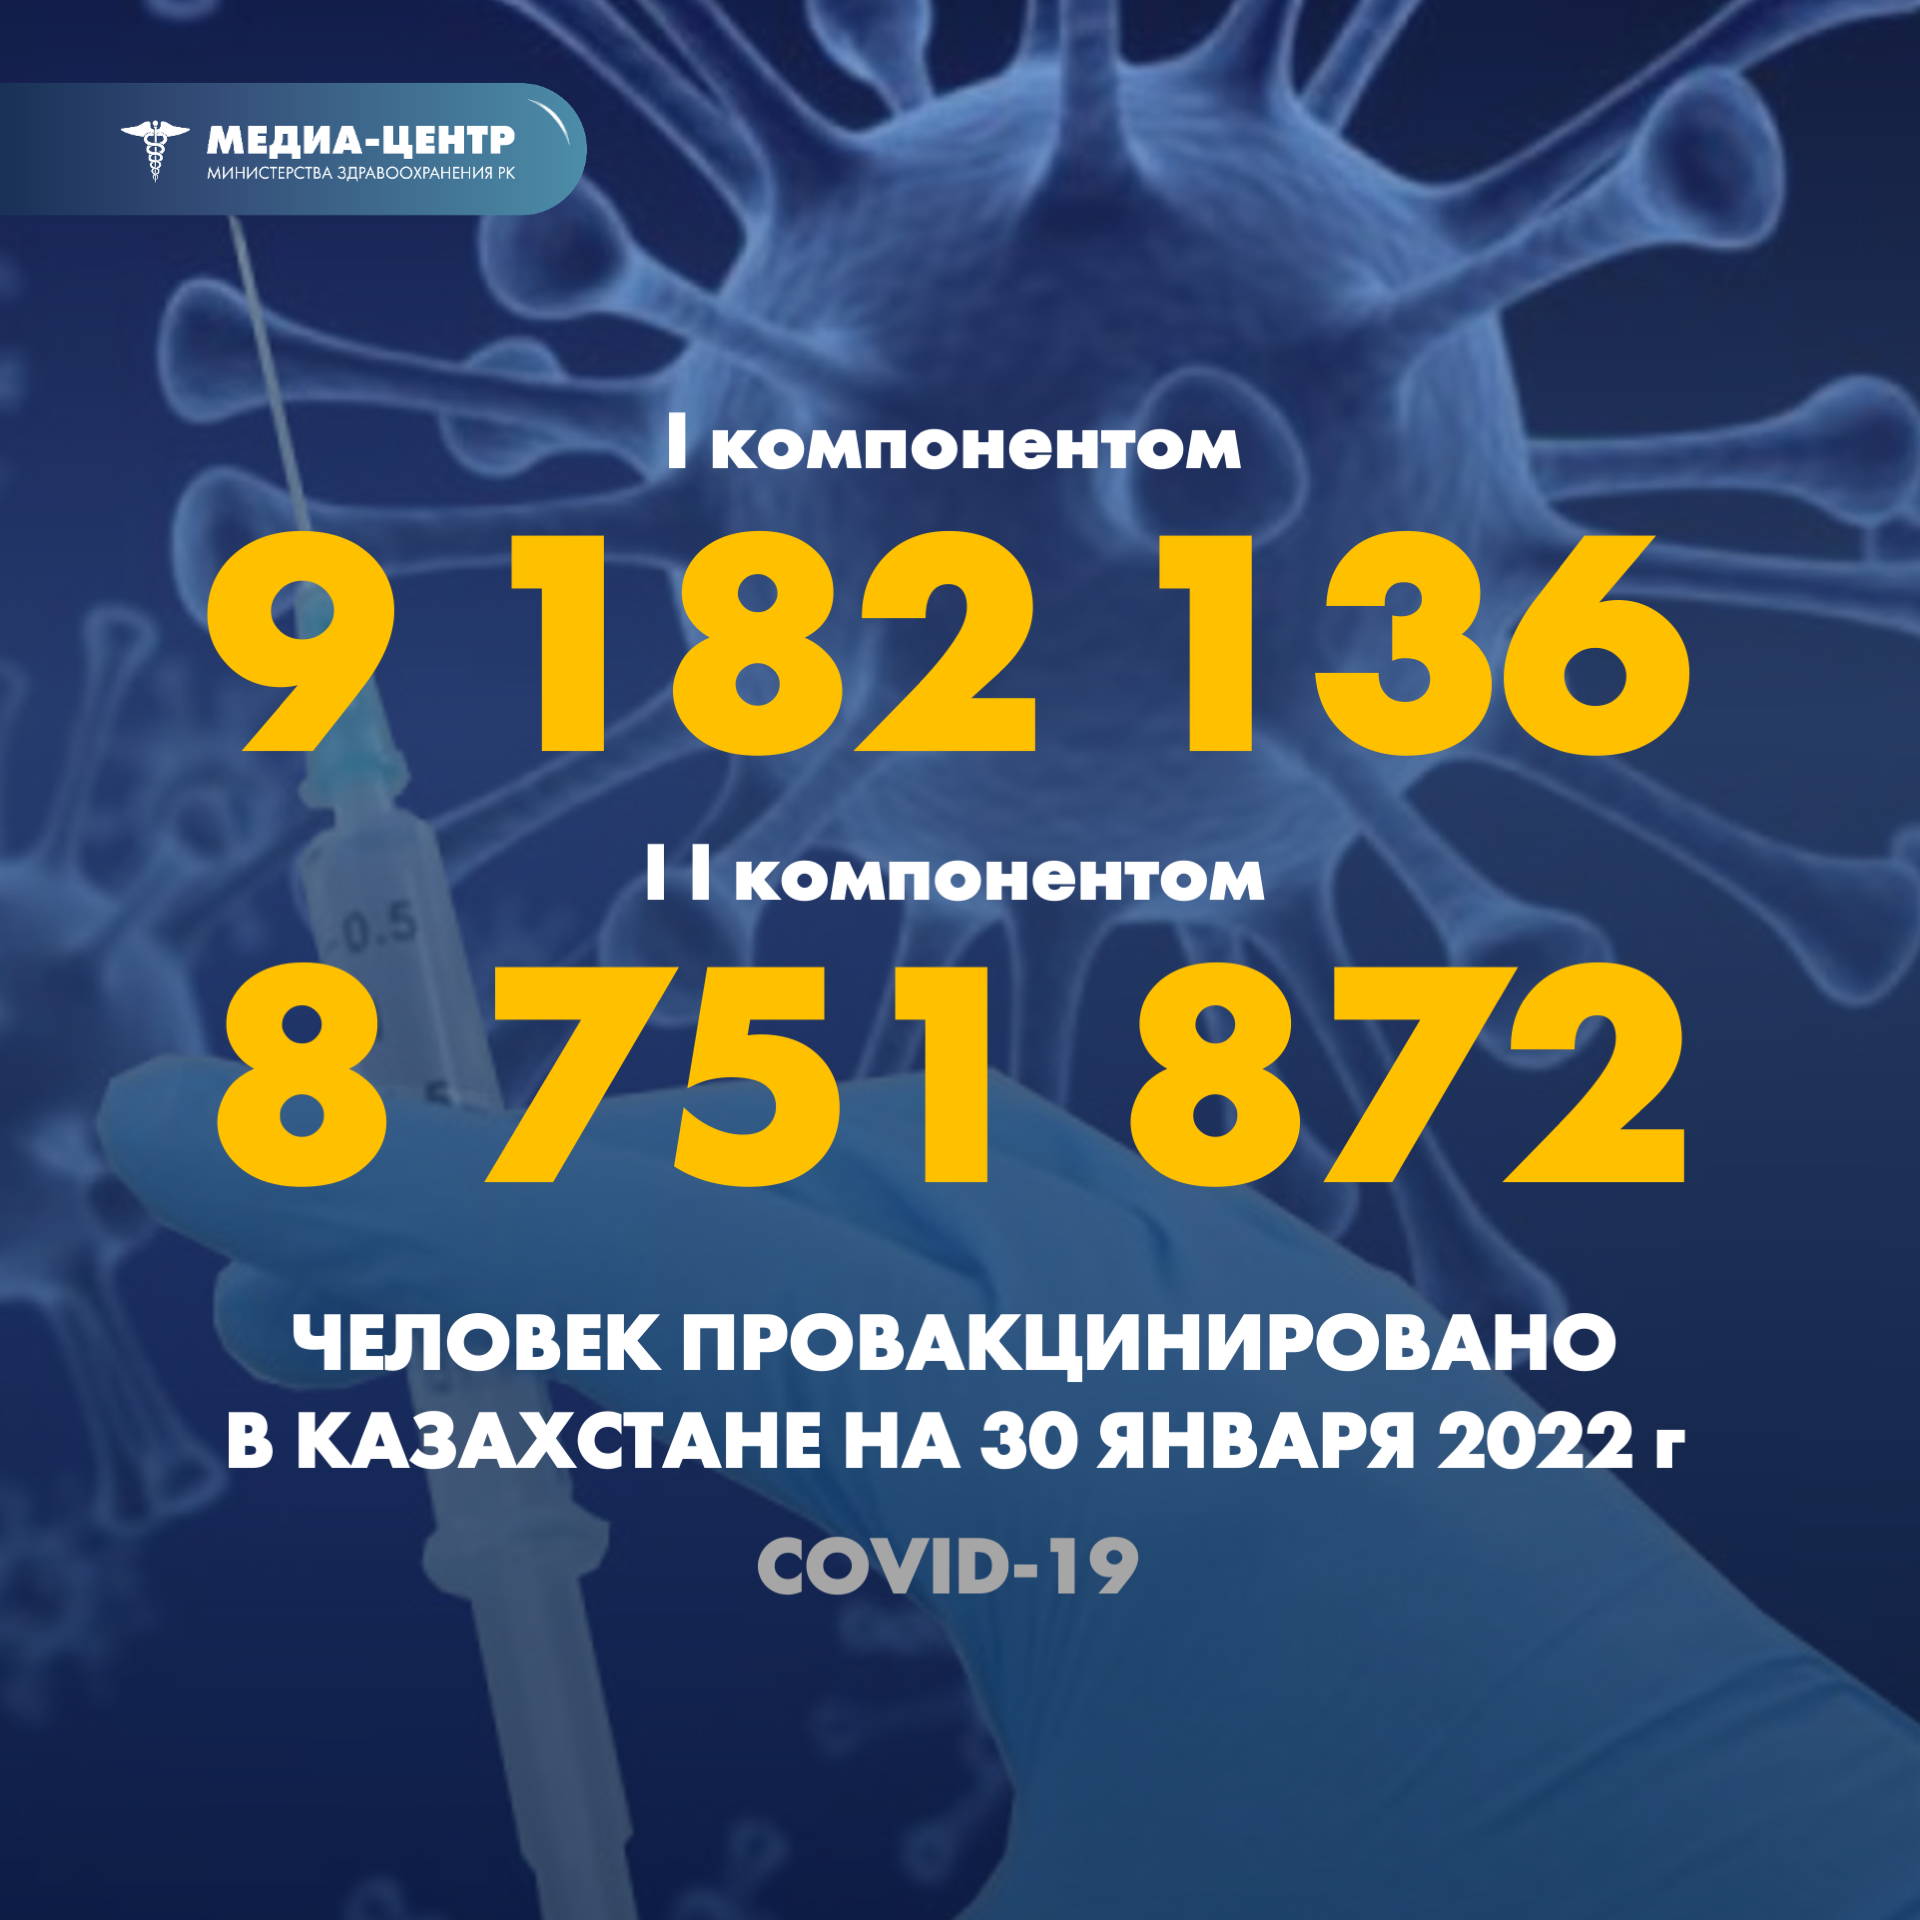 I компонентом 9 182 136 человек провакцинировано в Казахстане на 30 января 2022 г, II компонентом 8 751 872 человек.